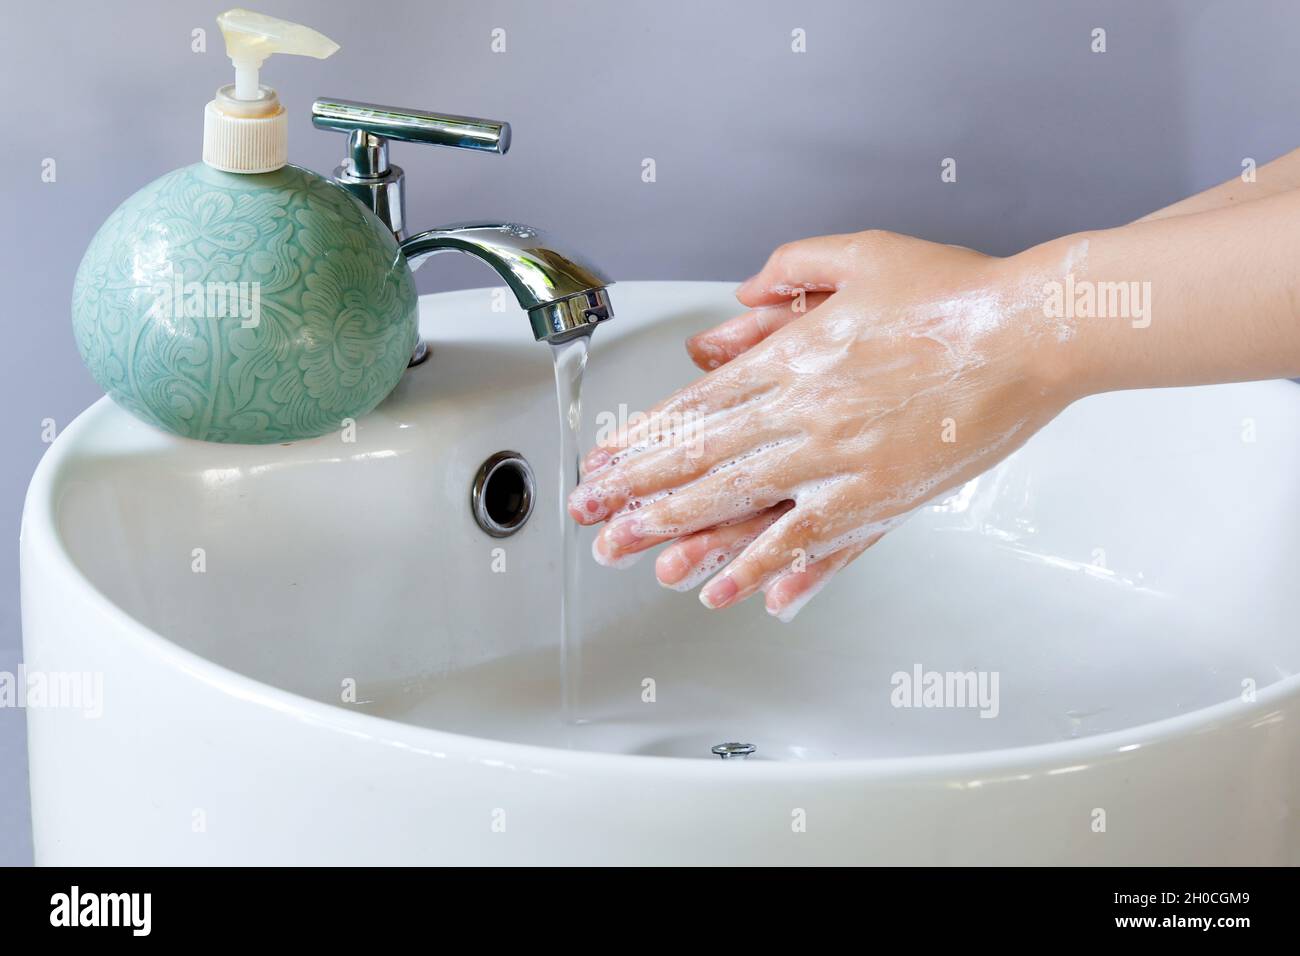 Lavando le mani in una vasca rotonda bianca in ceramica, bolle di sapone a  portata di mano. Sul bacino è presente una bottiglia di sapone liquido  verde e l'acqua fuoriesce dal rubinetto